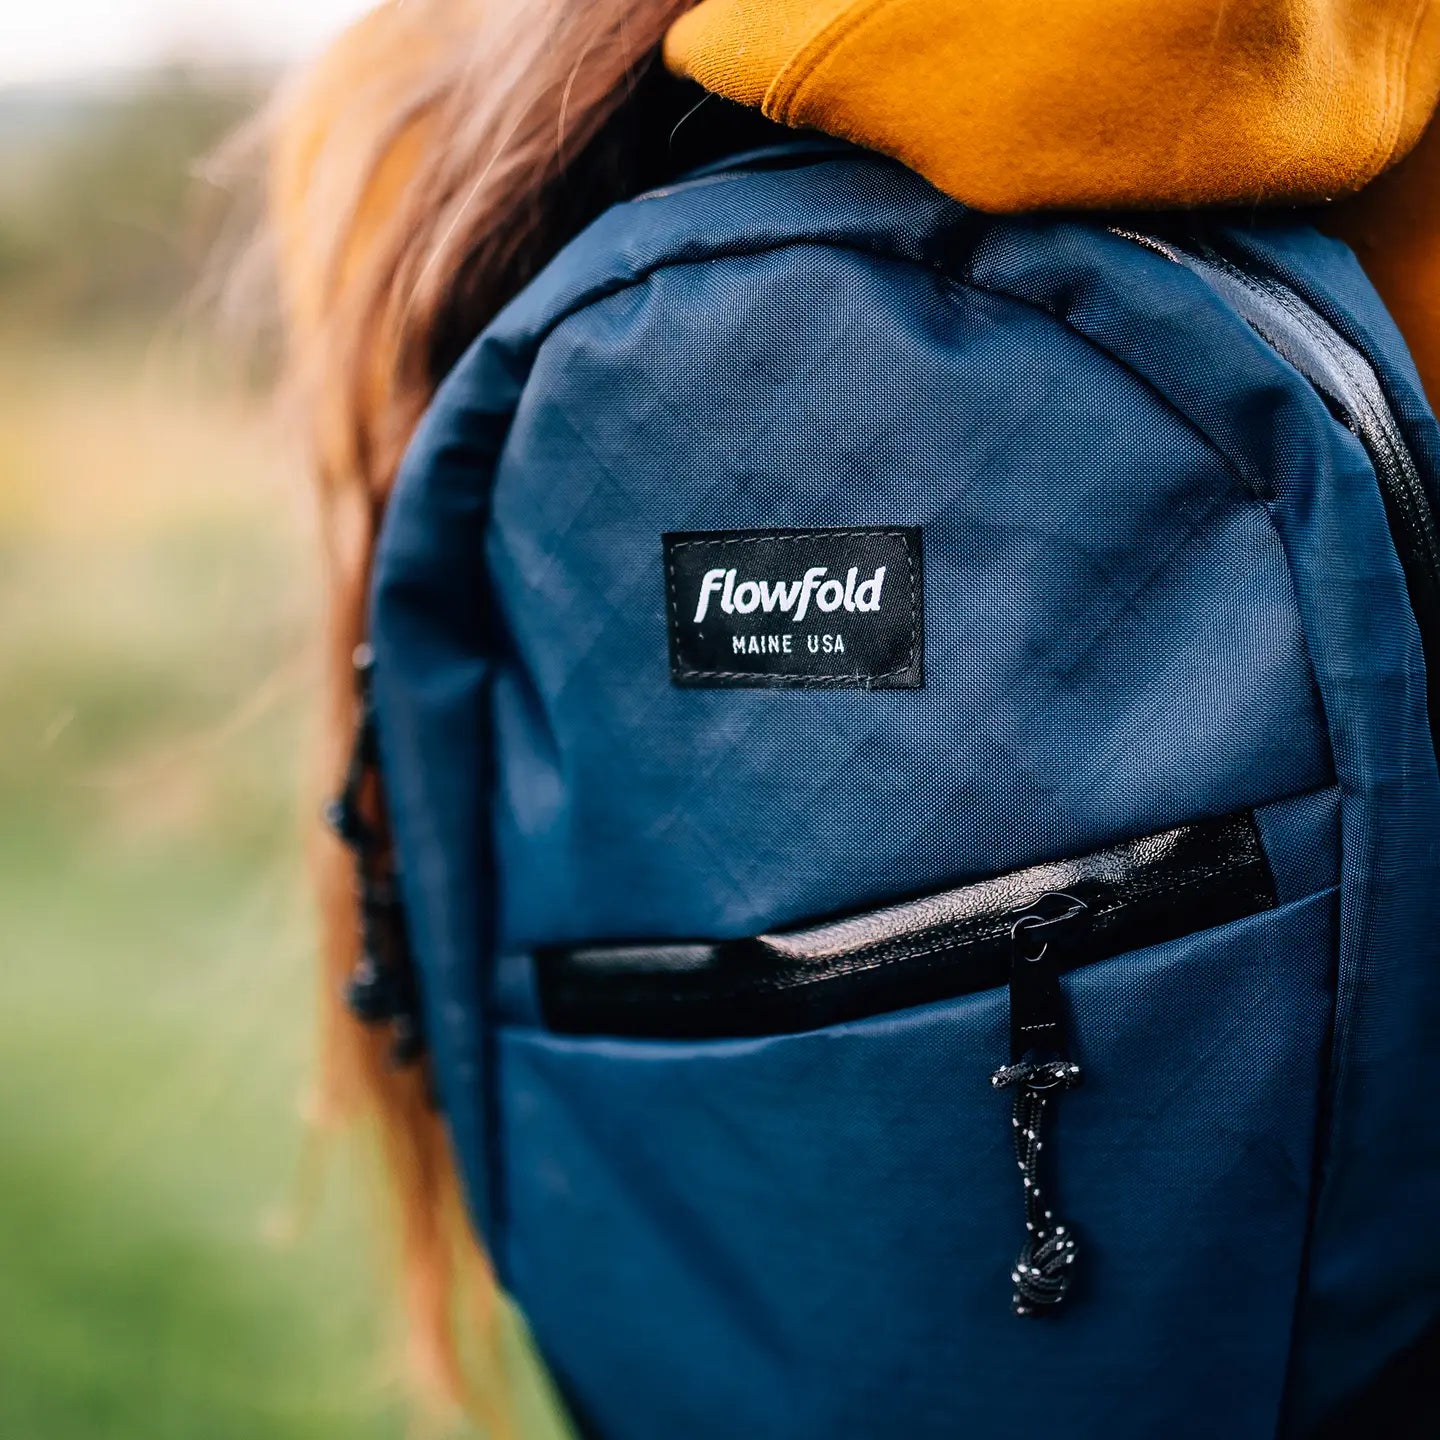 Flowfold | Optimist Backpack, Backpacks, Flowfold, Defiance Outdoor Gear Co.